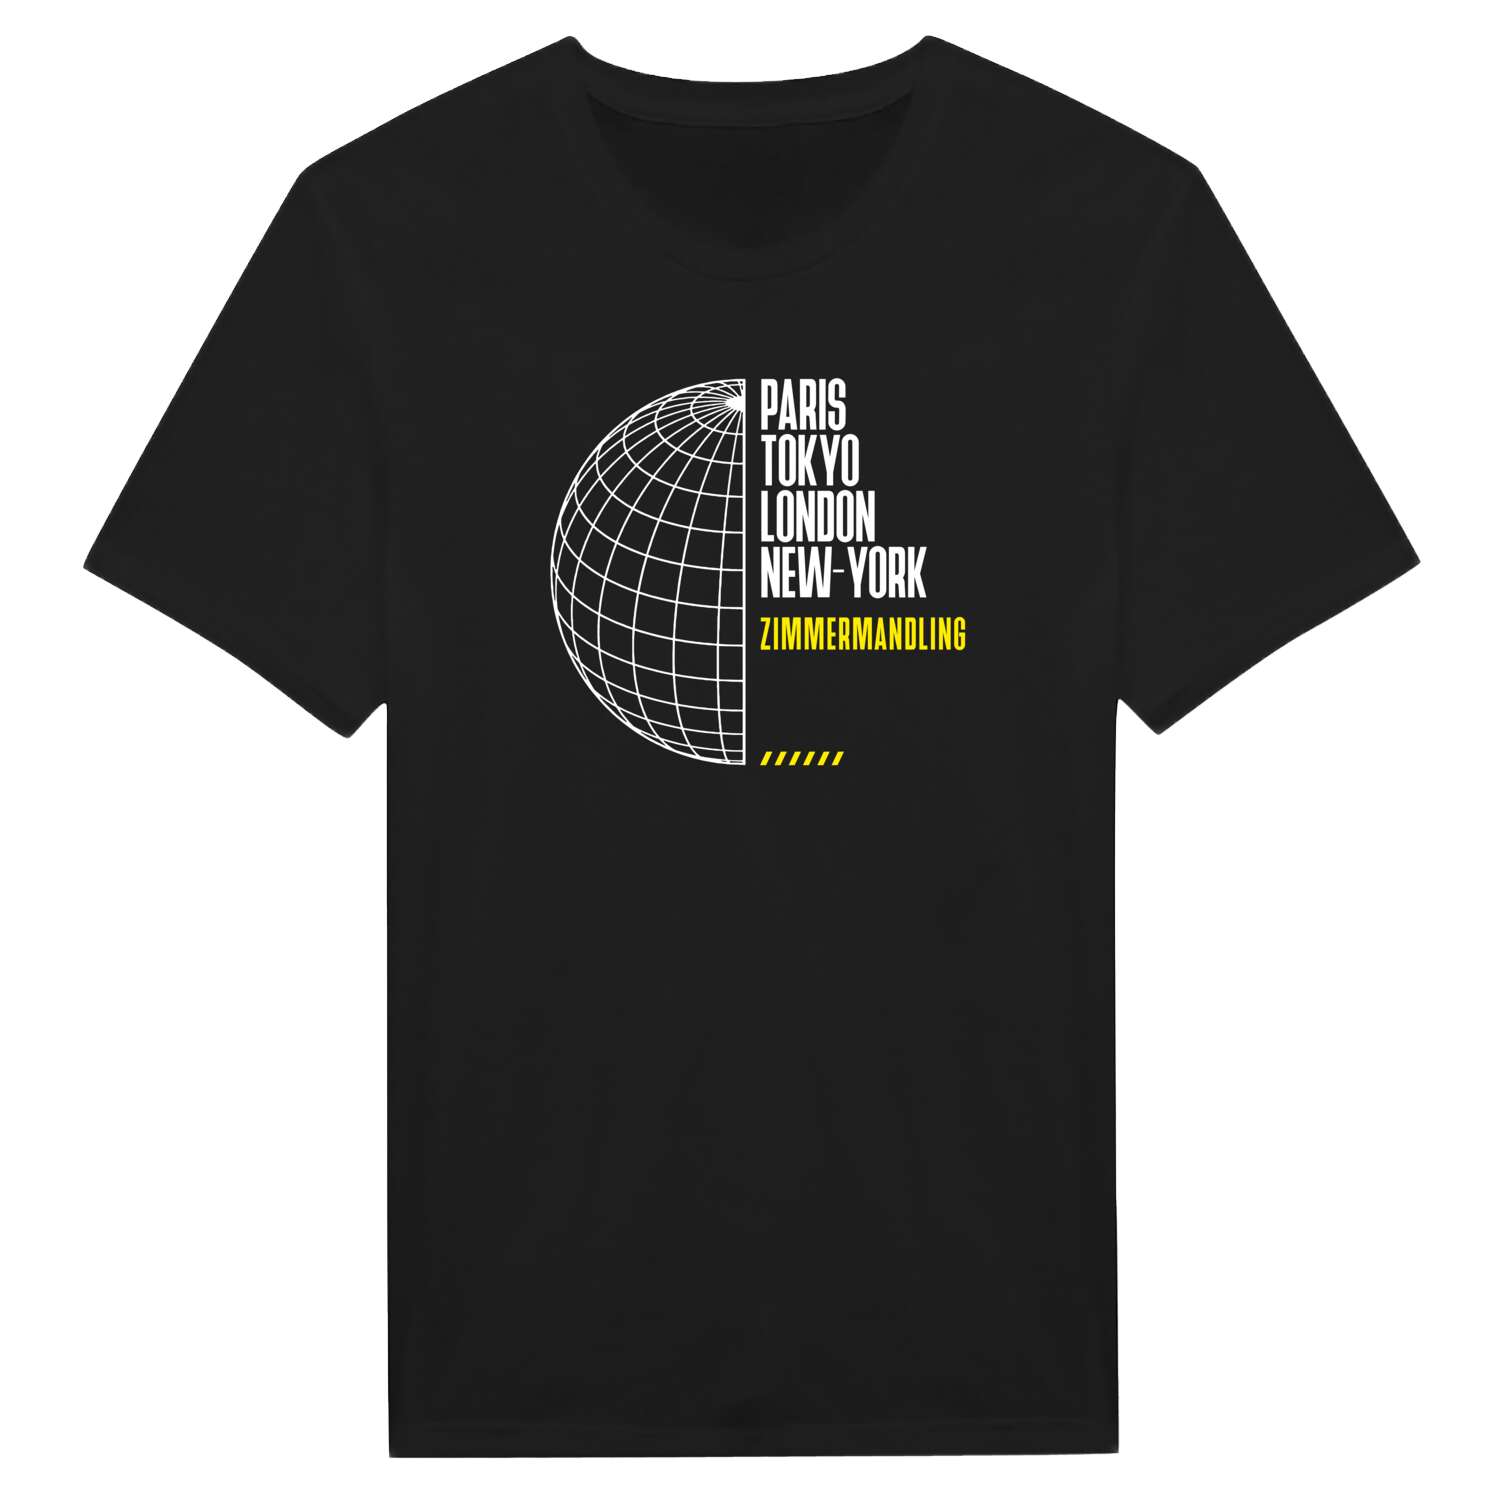 Zimmermandling T-Shirt »Paris Tokyo London«